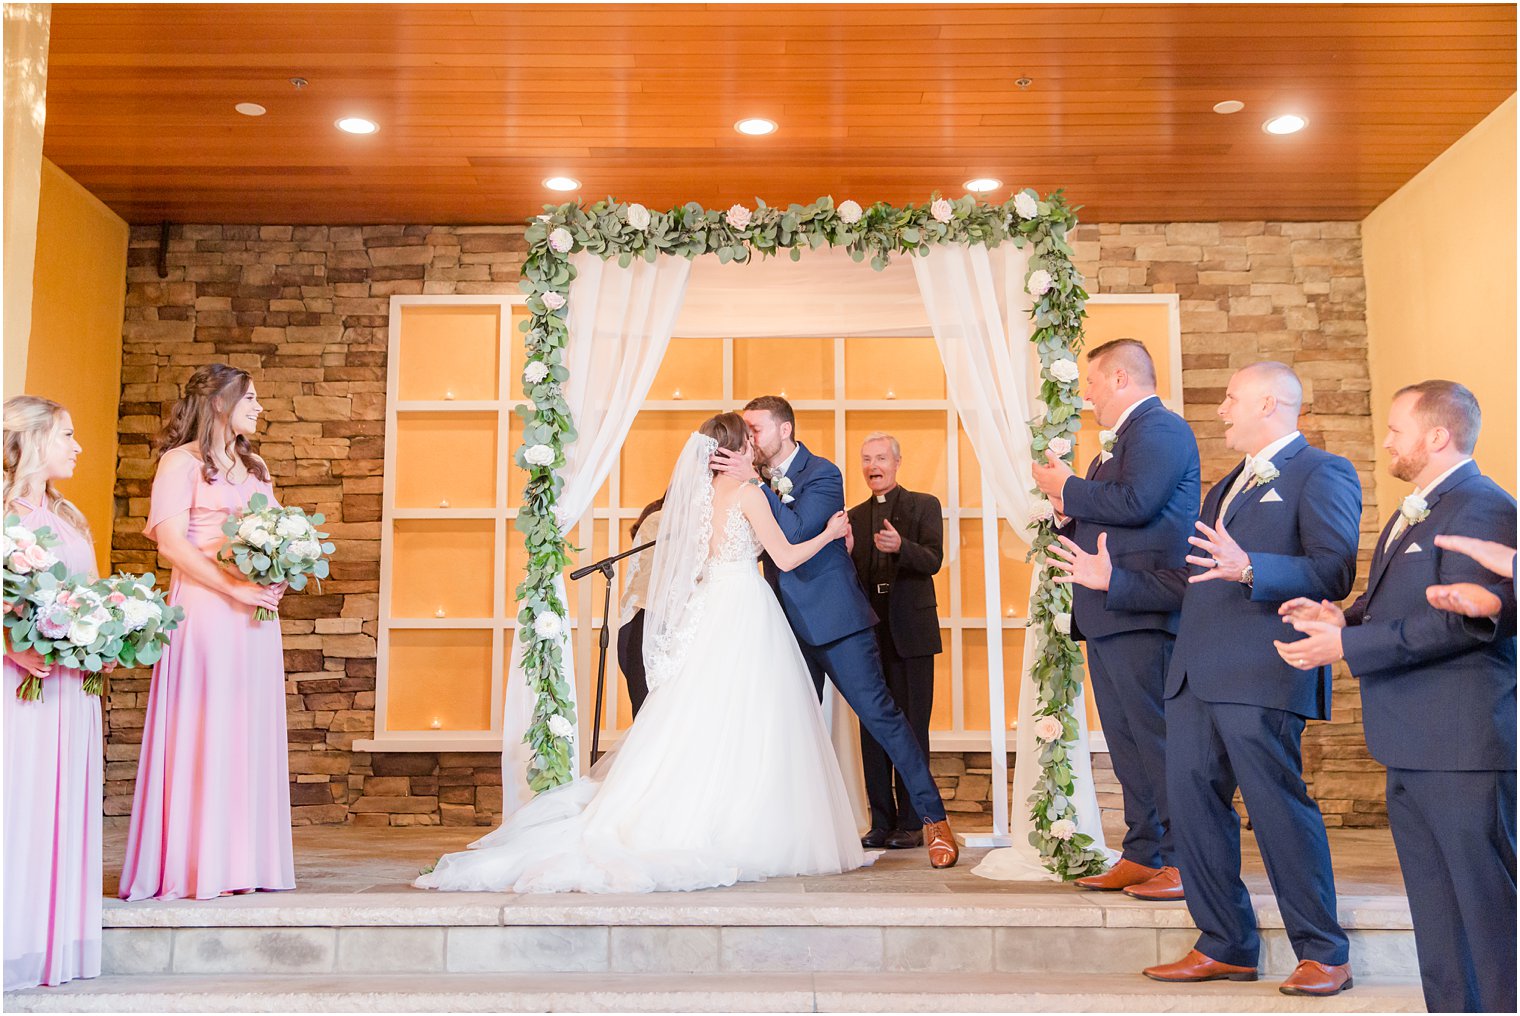 Wedding ceremony at Stone House at Stirling Ridge Wedding Photos by NJ Wedding Photographers Idalia Photography